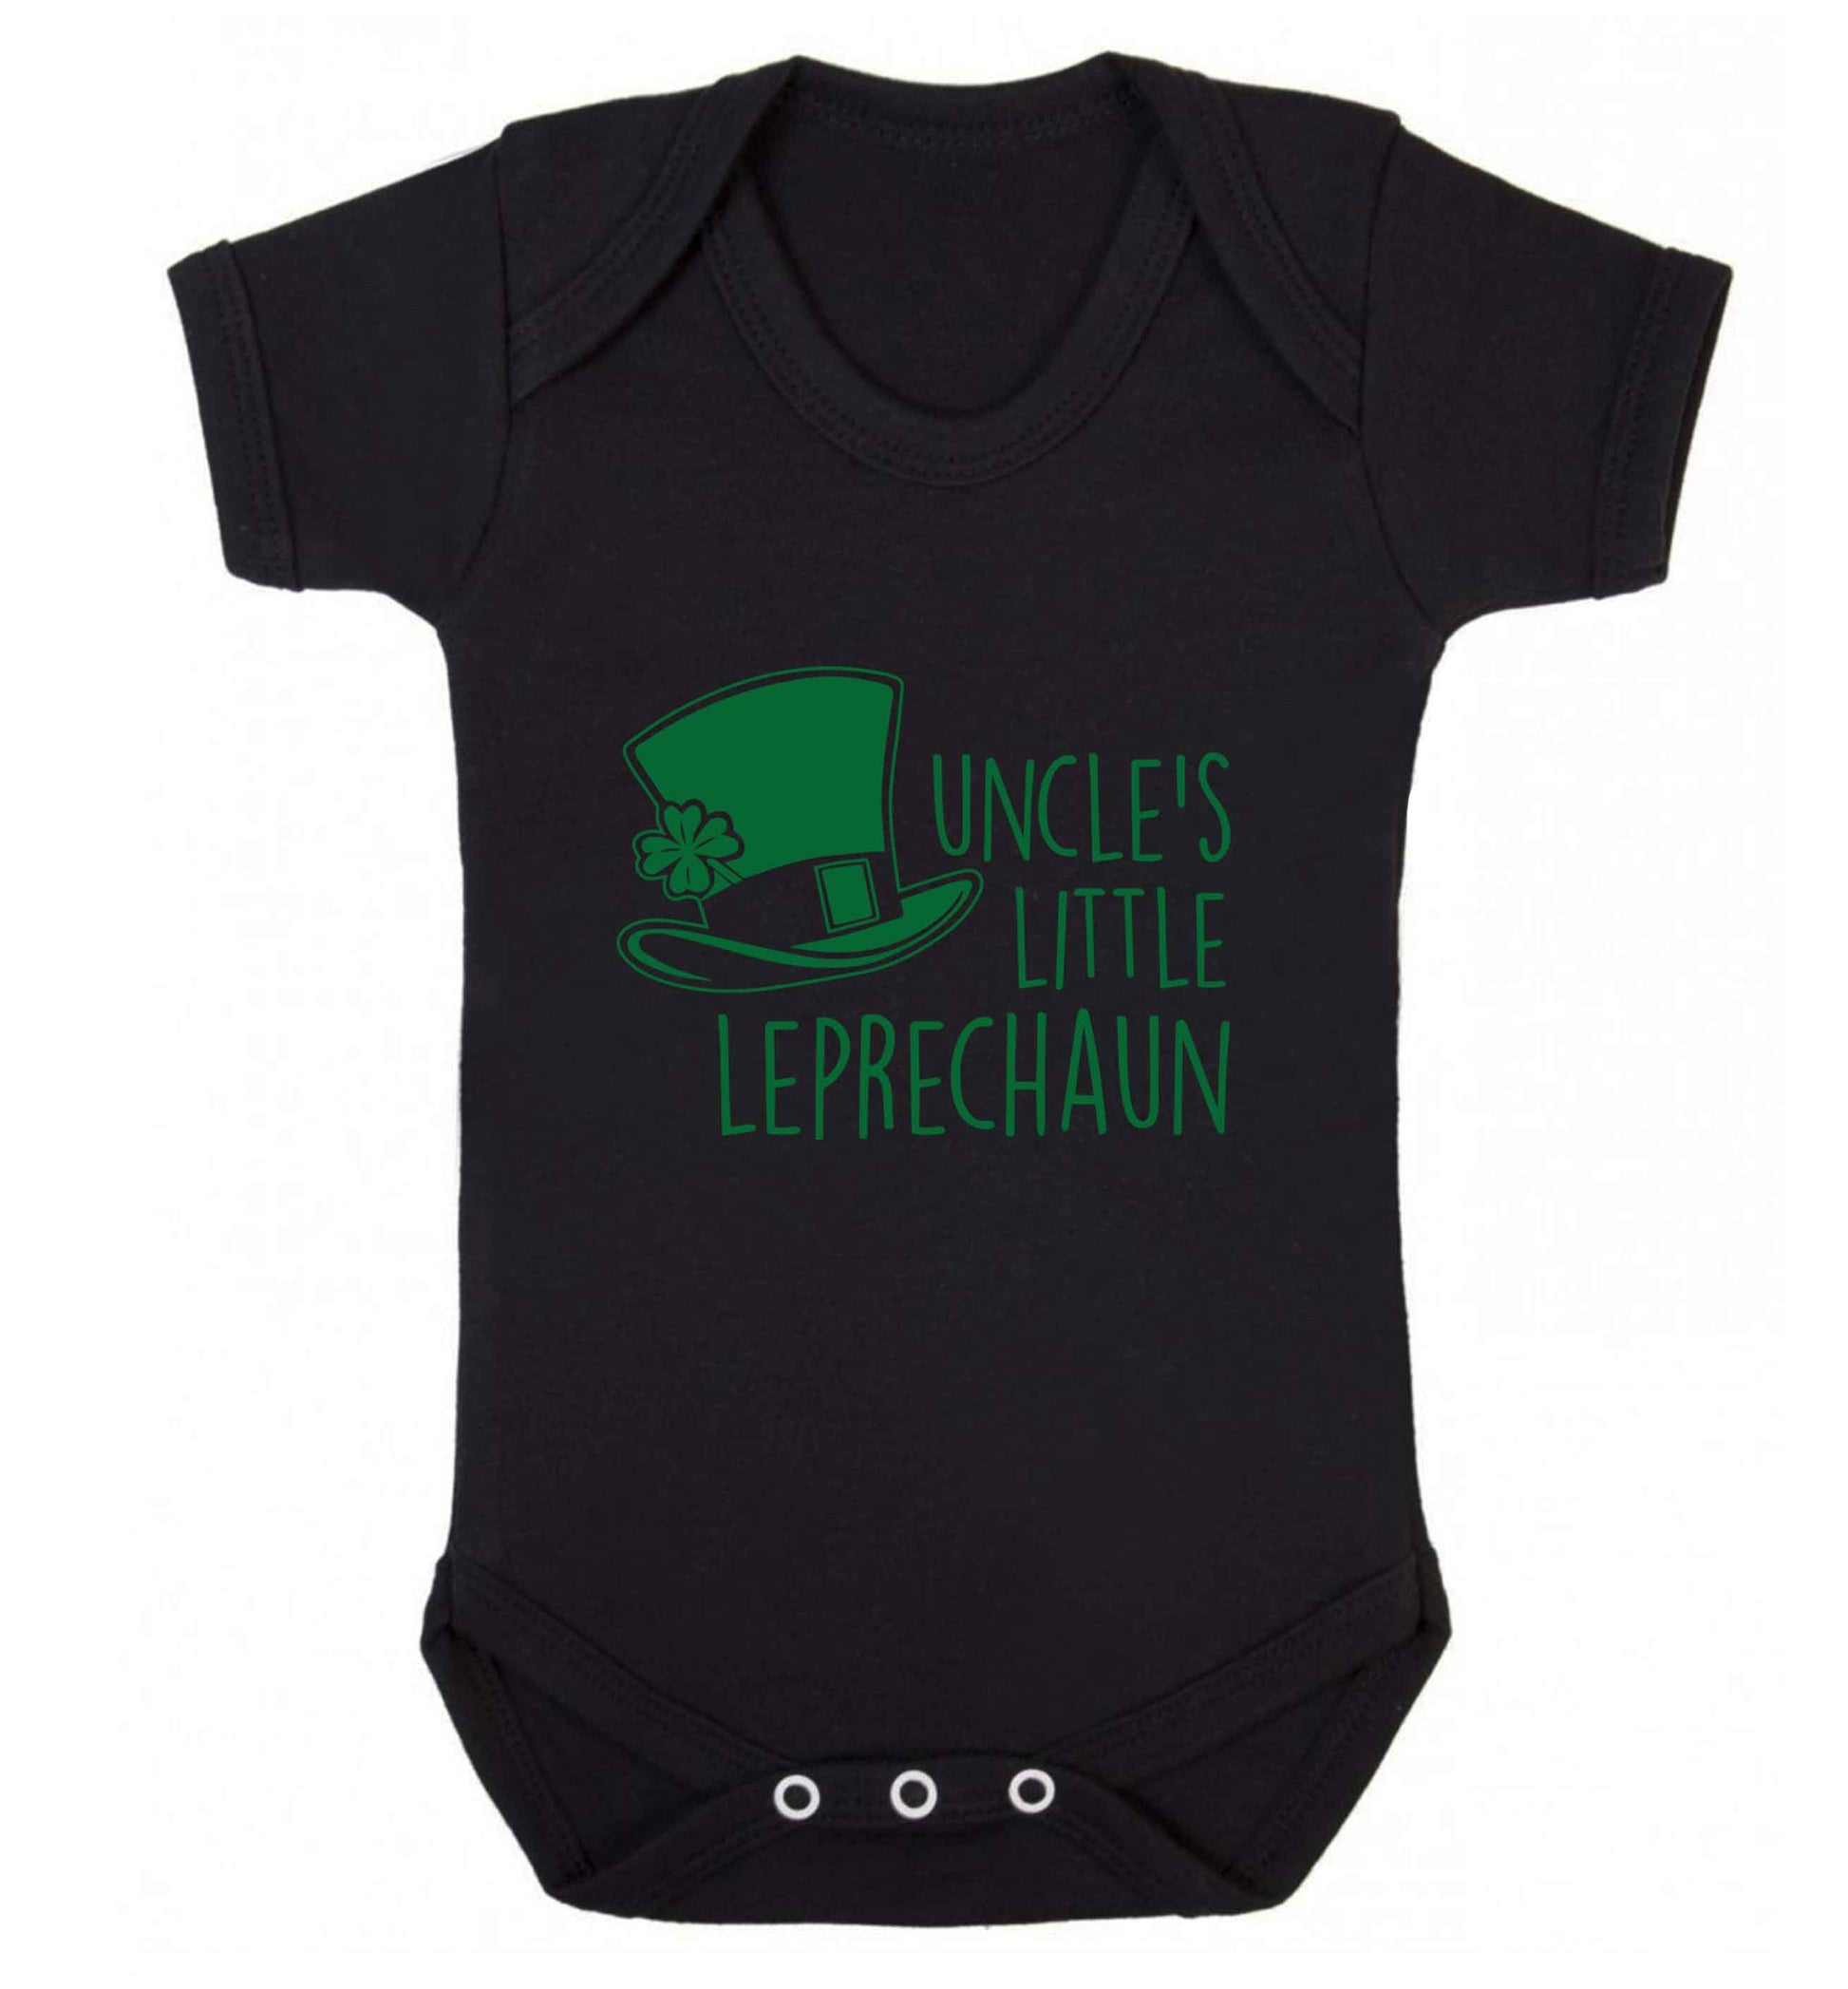 Uncles little leprechaun baby vest black 18-24 months